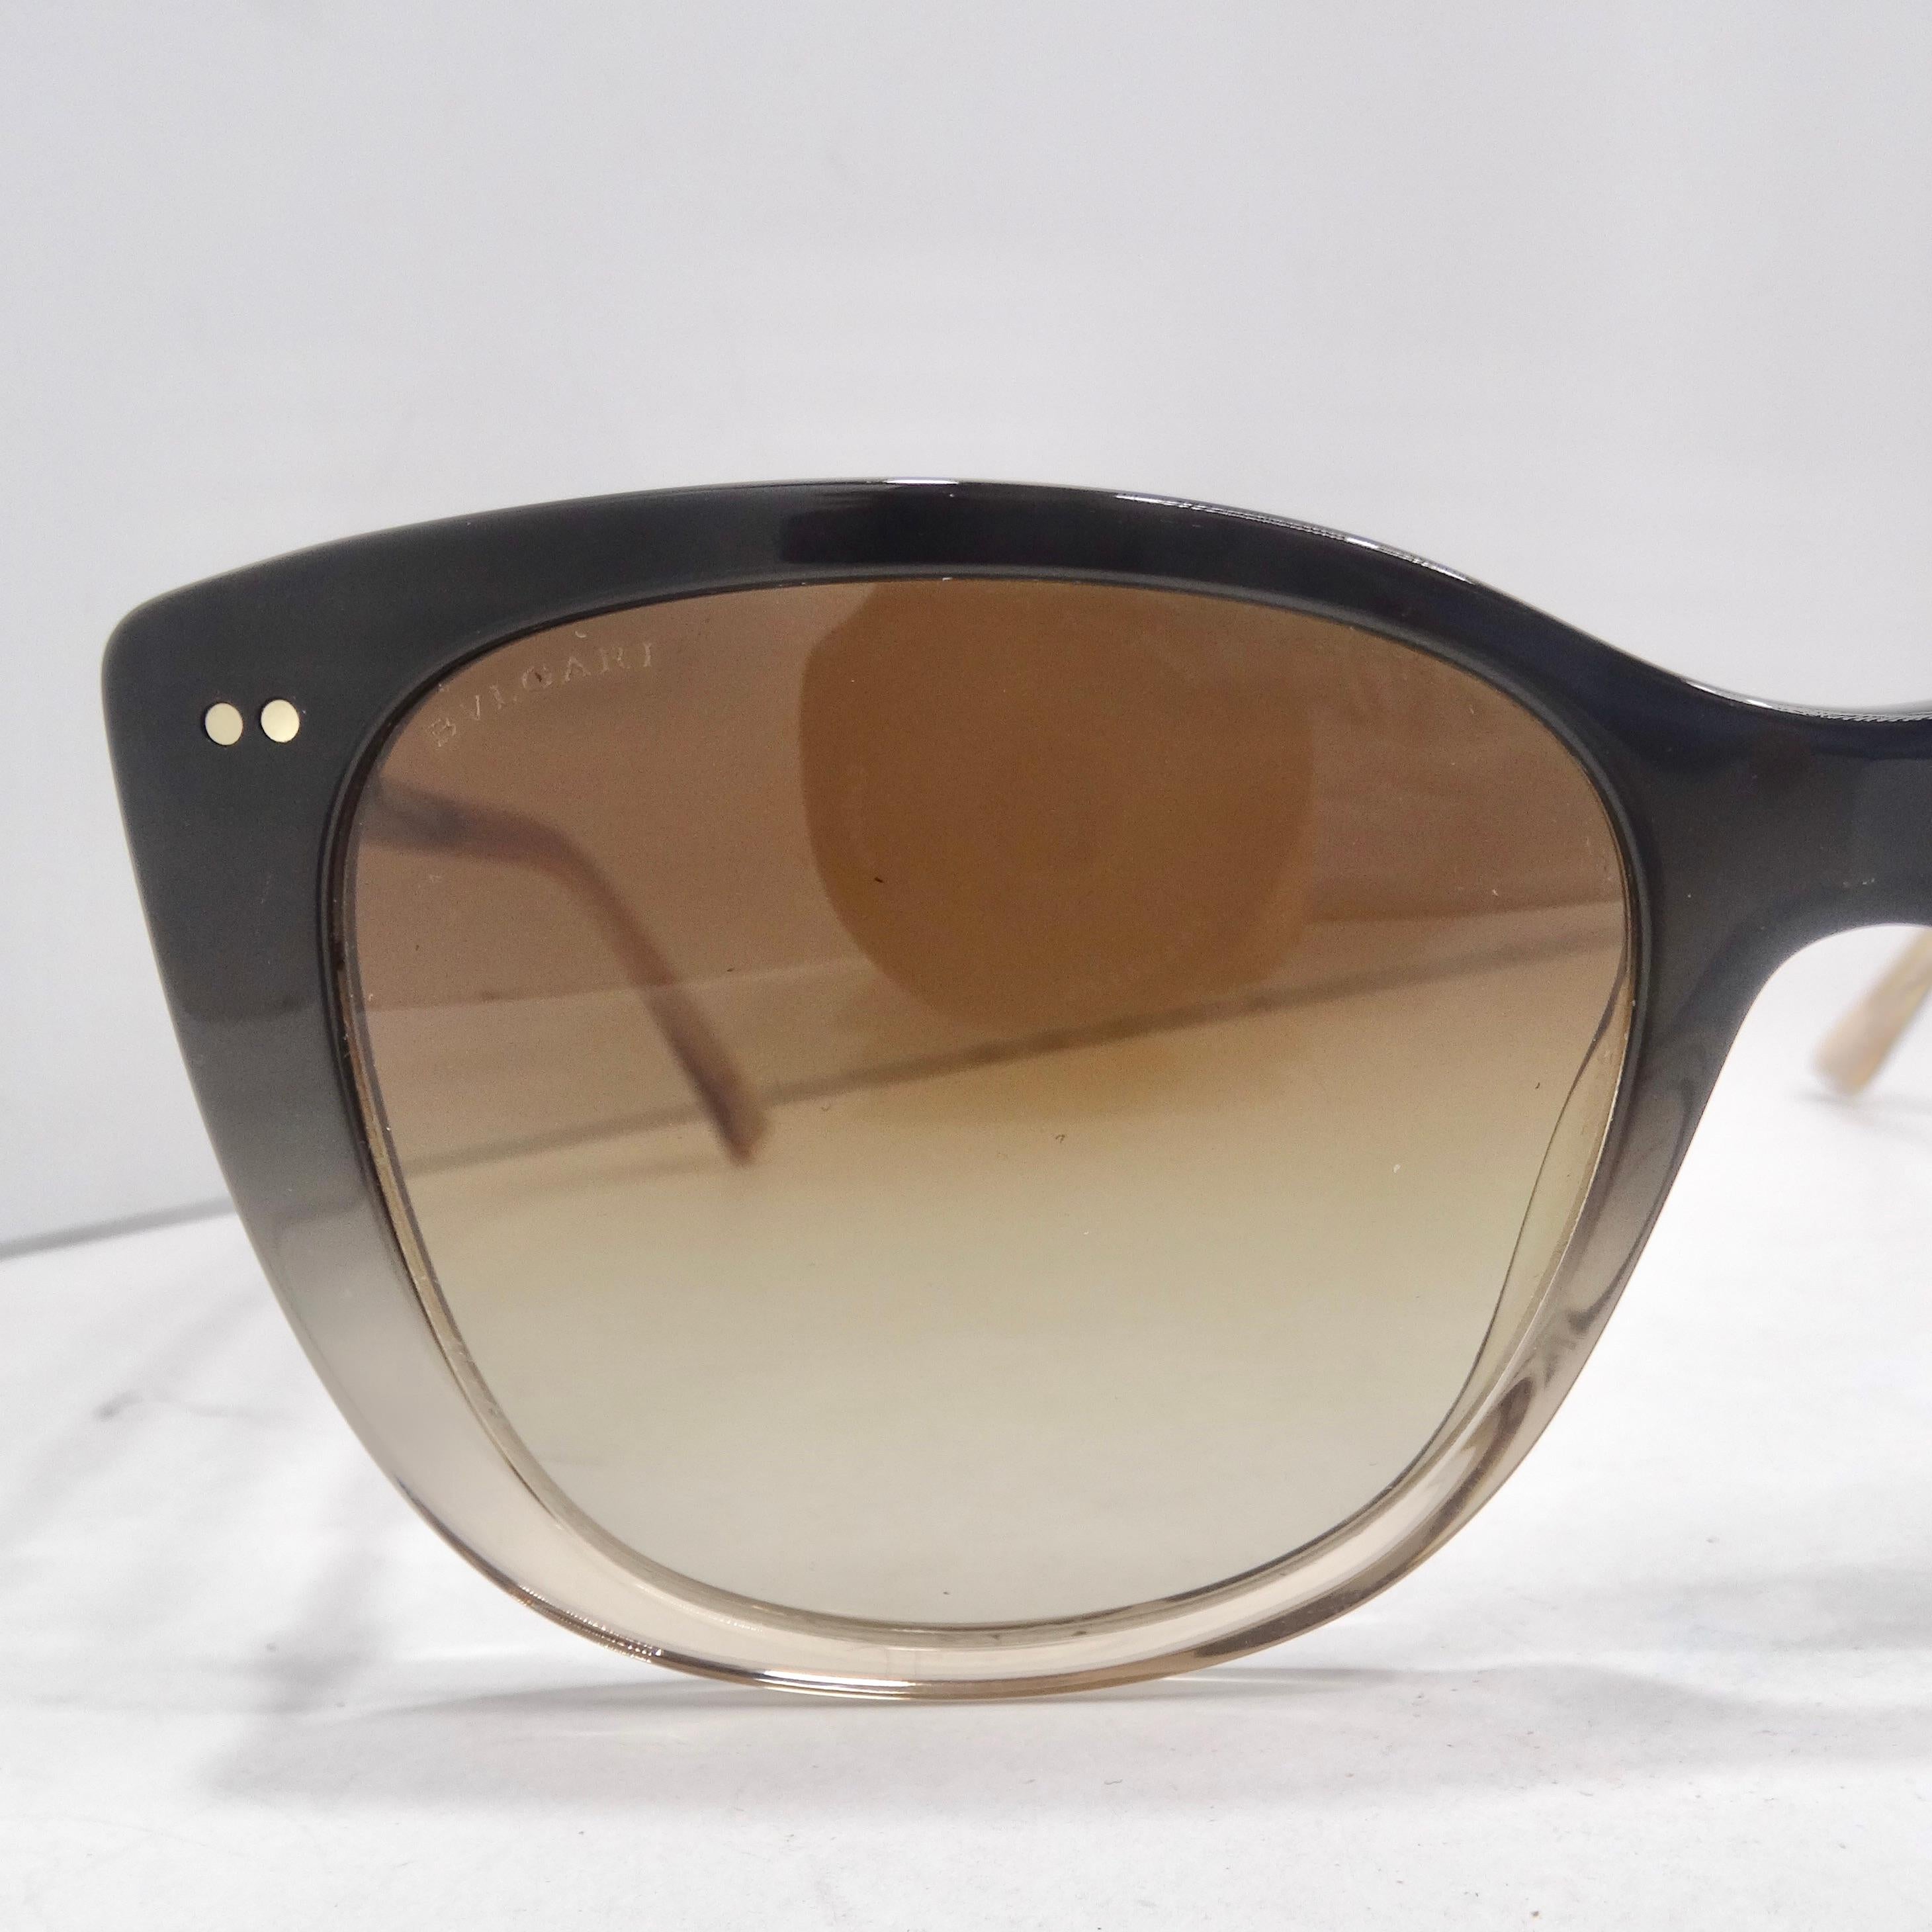 Voici les lunettes de soleil Bvlgari 8220F en noir marron dégradé - une combinaison étonnante de luxe, de polyvalence et de design intemporel. Ces lunettes de soleil à monture carrée de Bvlgari ne sont pas seulement un accessoire, elles sont une